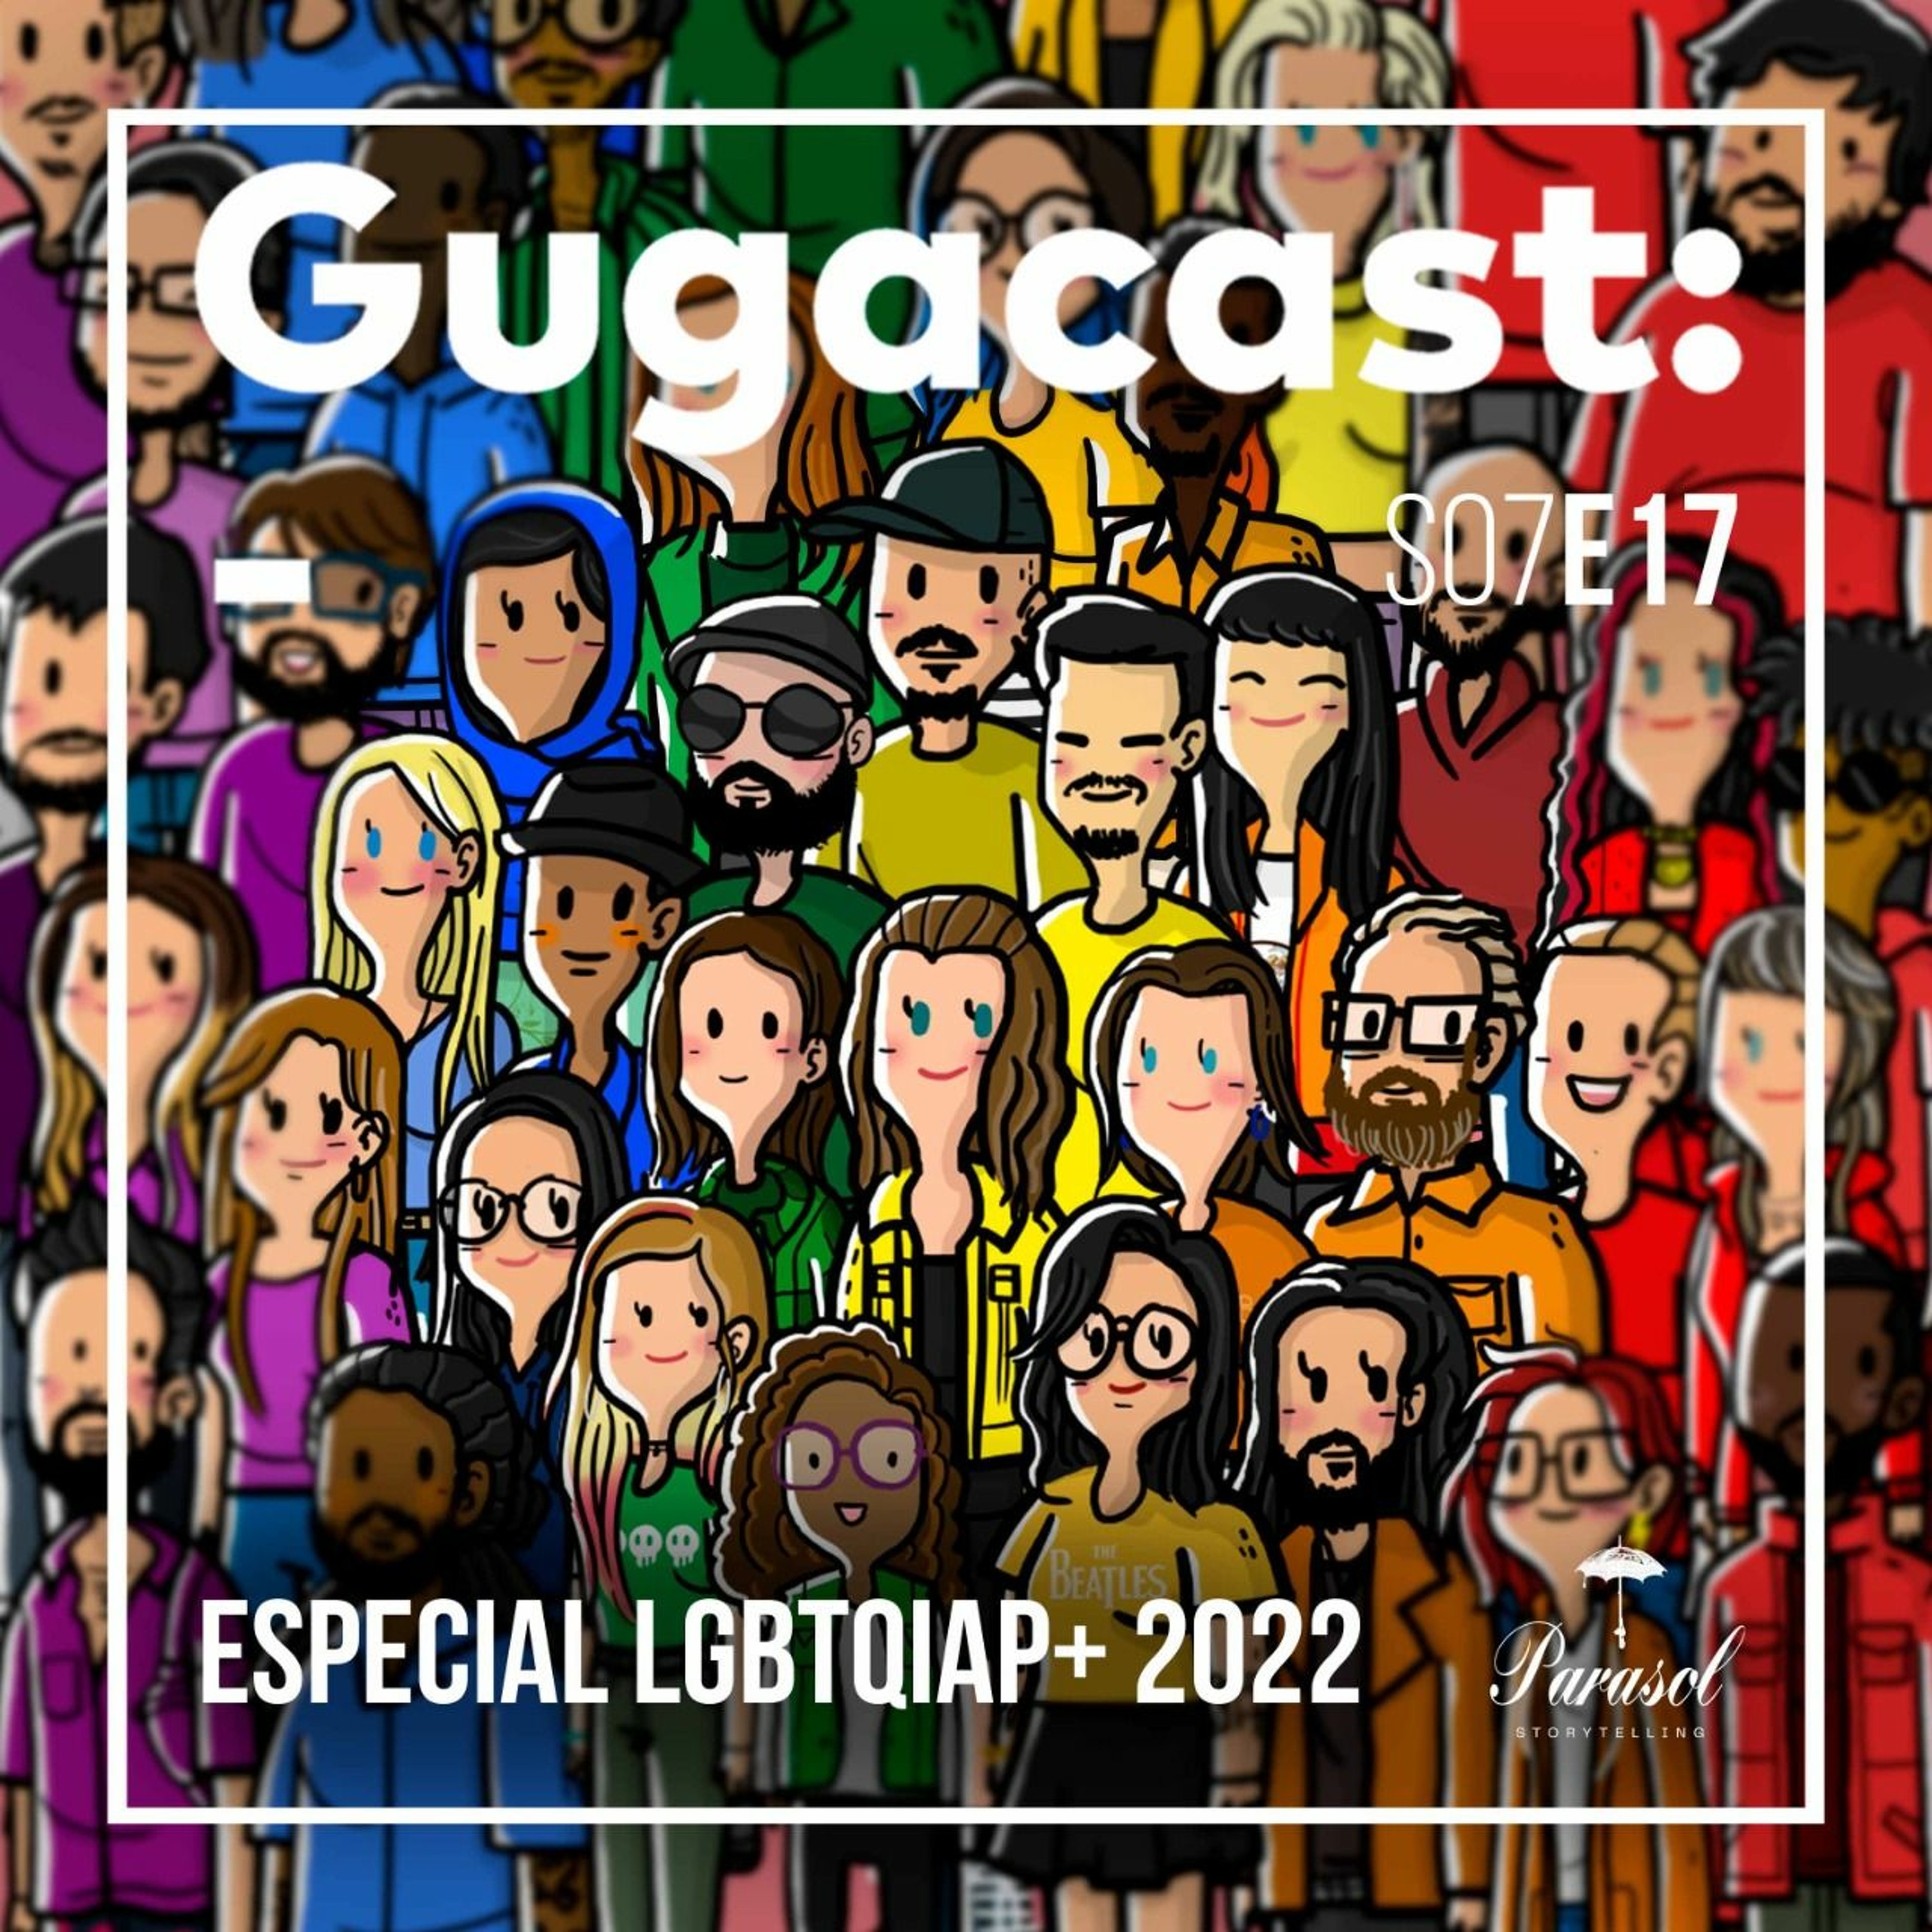 Especial LGBTQIAP+ 2022 – Gugacast – S07E17